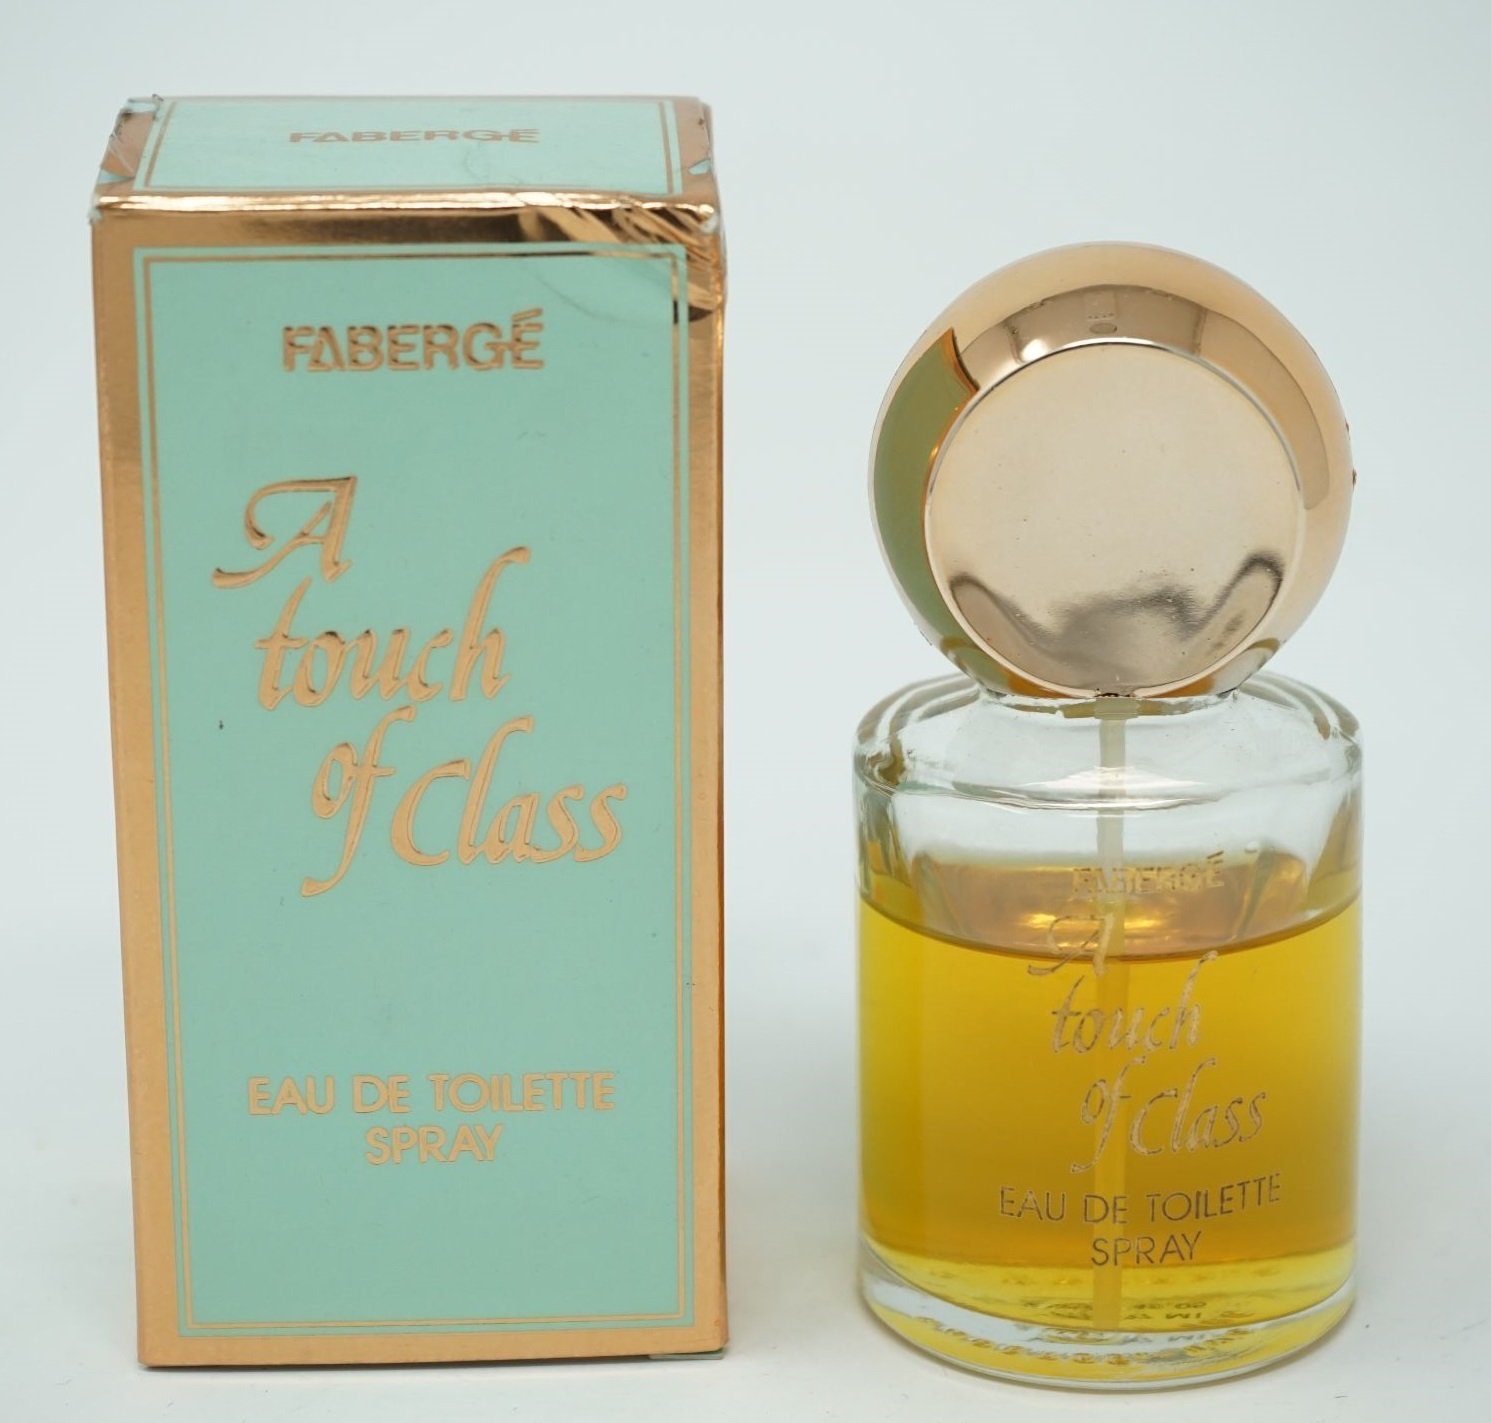 Tiziana Terenzi Eau de Toilette Faberge A Touch Of Class Eau de Toilette Spray 50 ml